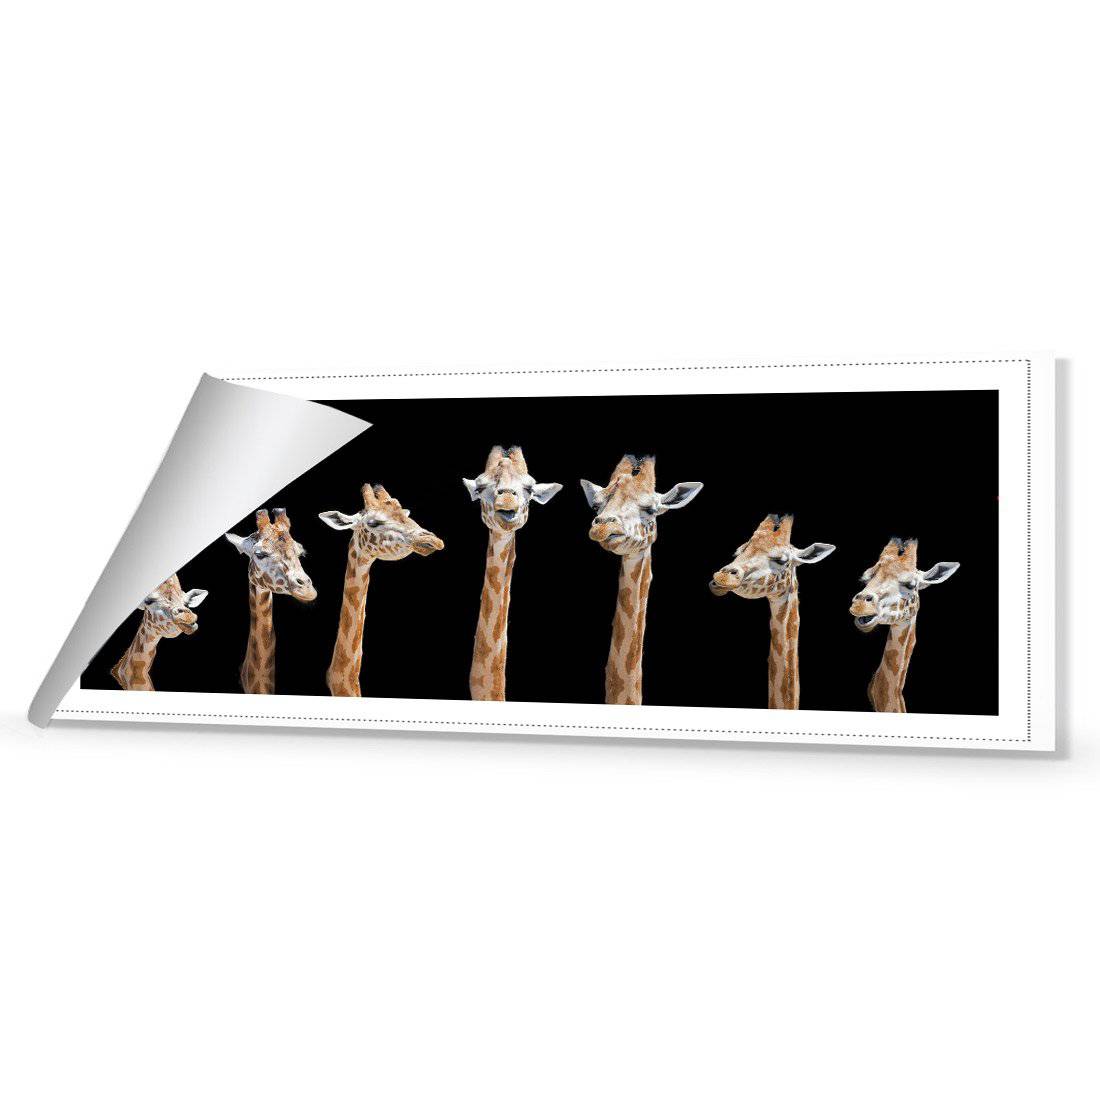 Laughing Giraffes Canvas Art-Canvas-Wall Art Designs-60x20cm-Rolled Canvas-Wall Art Designs